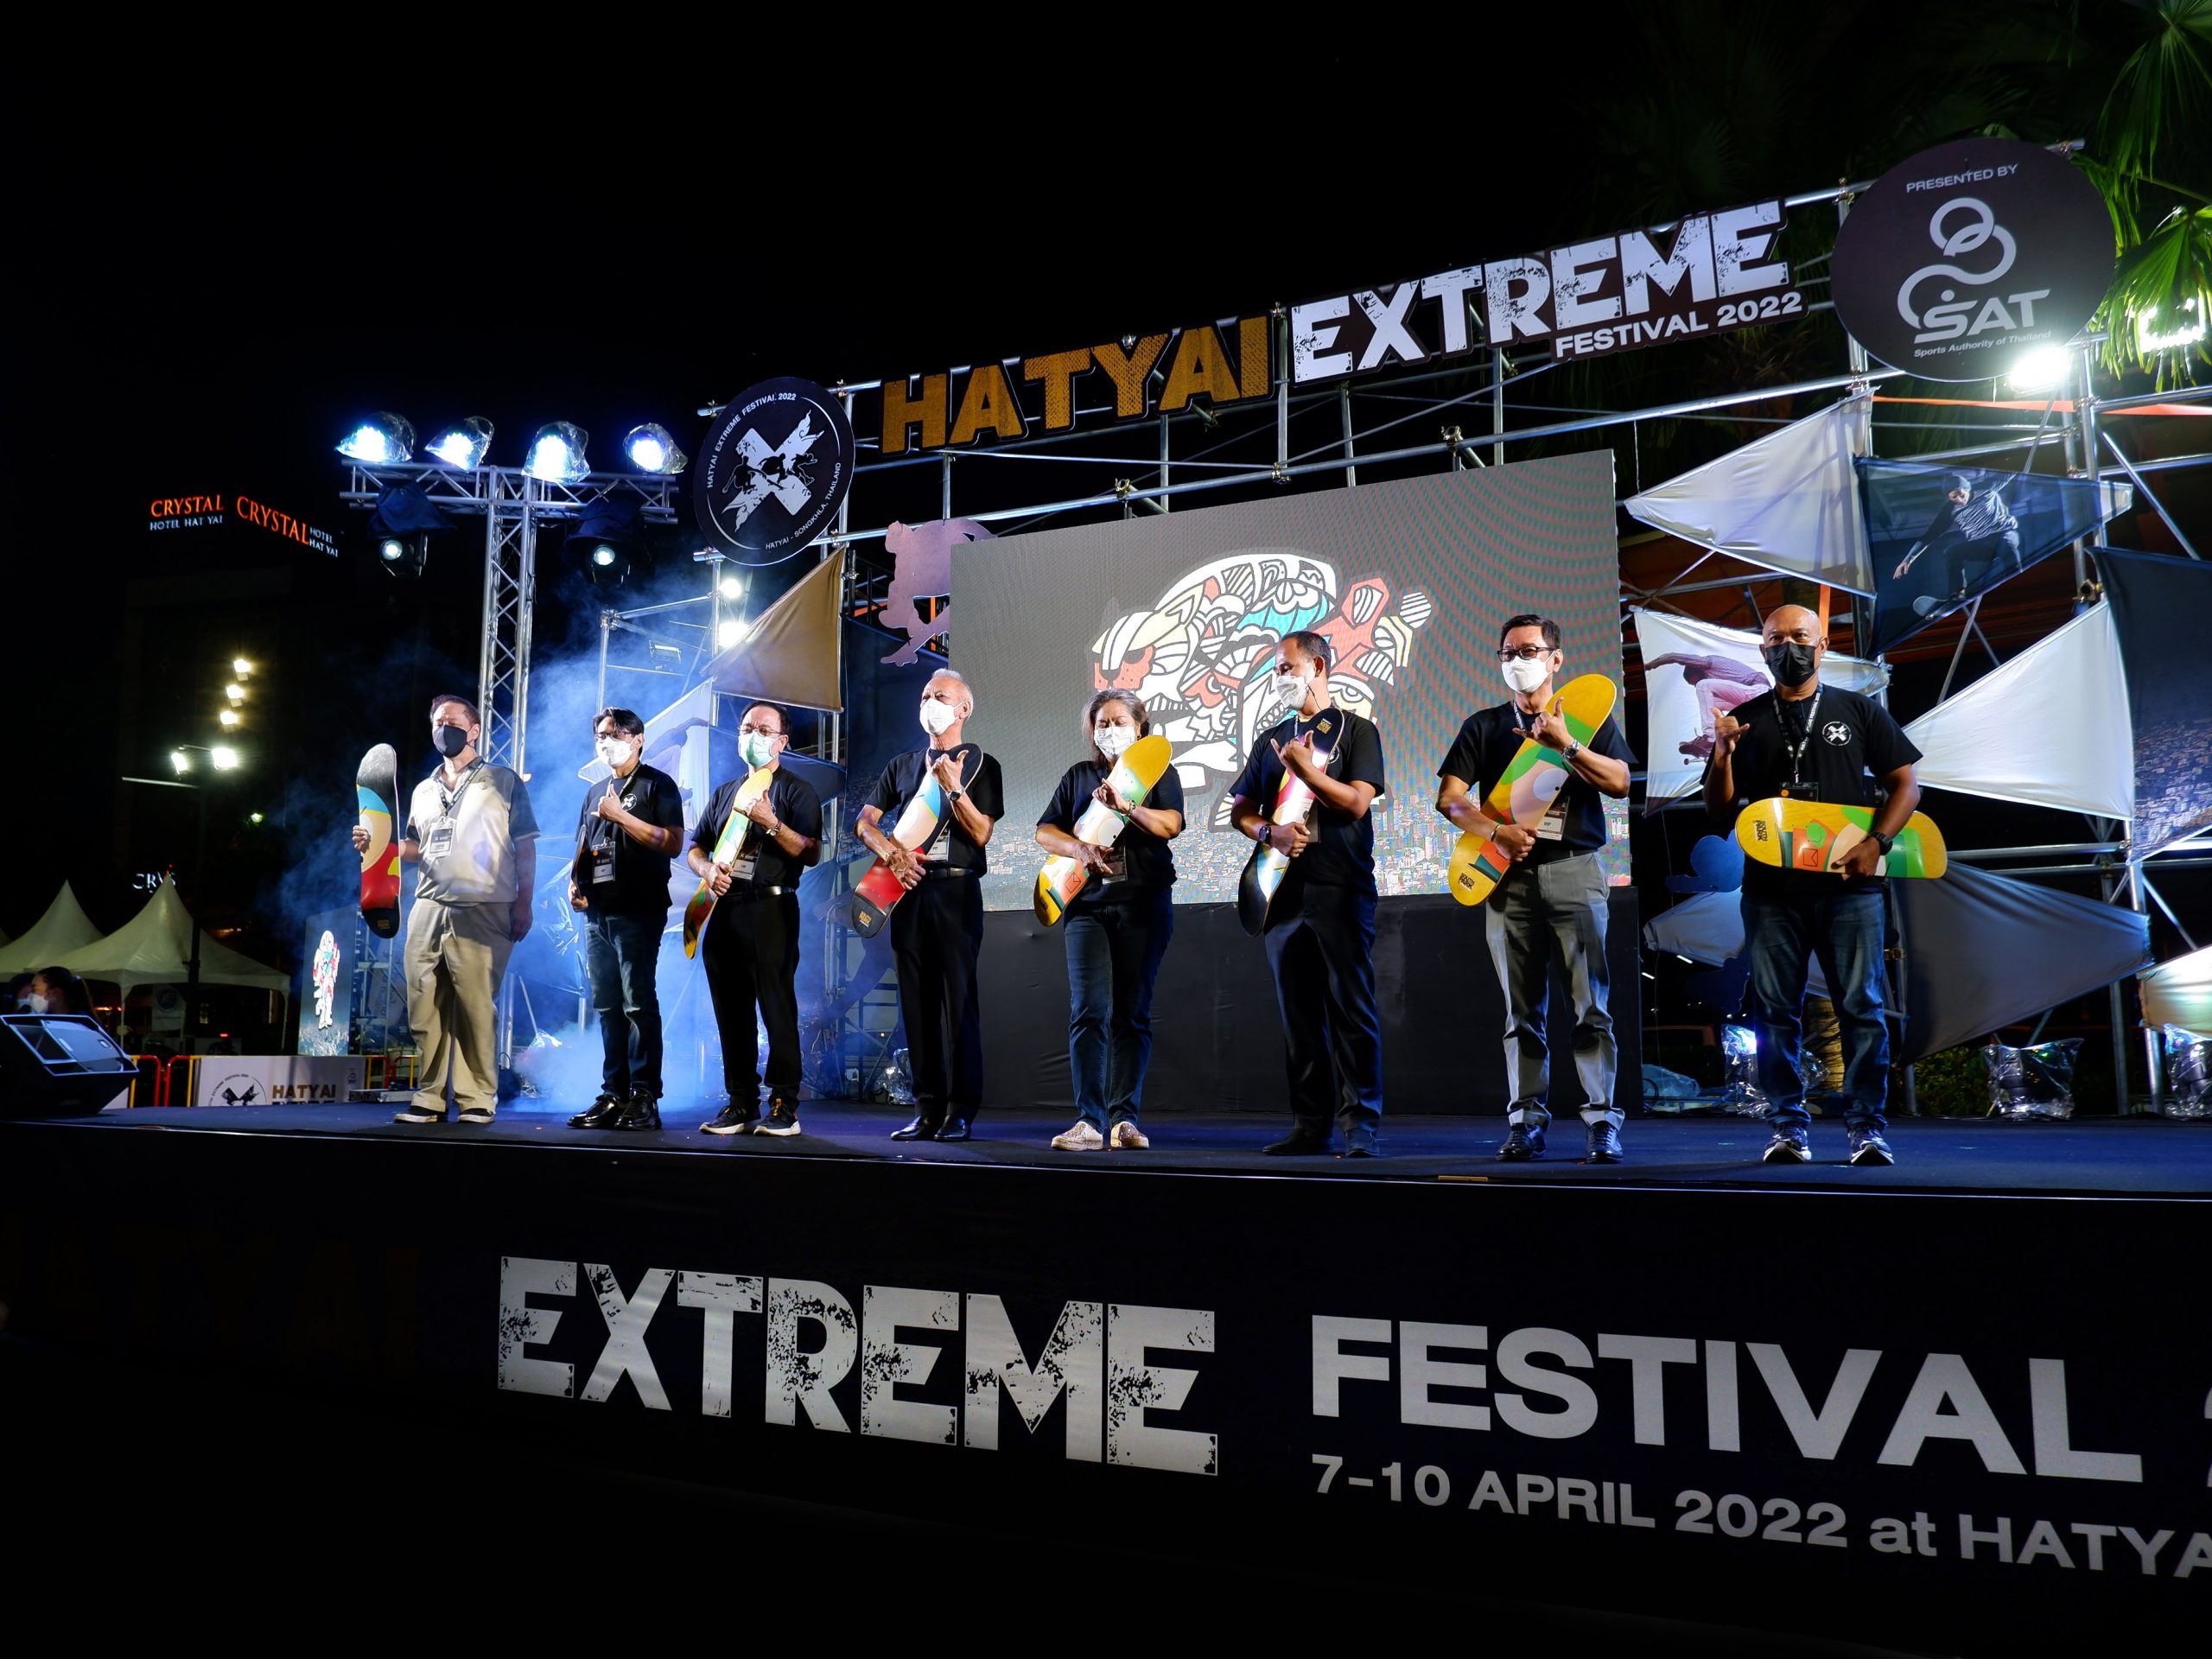 รมว.พิพัฒนเป็นประธานเปิดงาน "HATYAI EXTREME FESTIVAL 2022 "